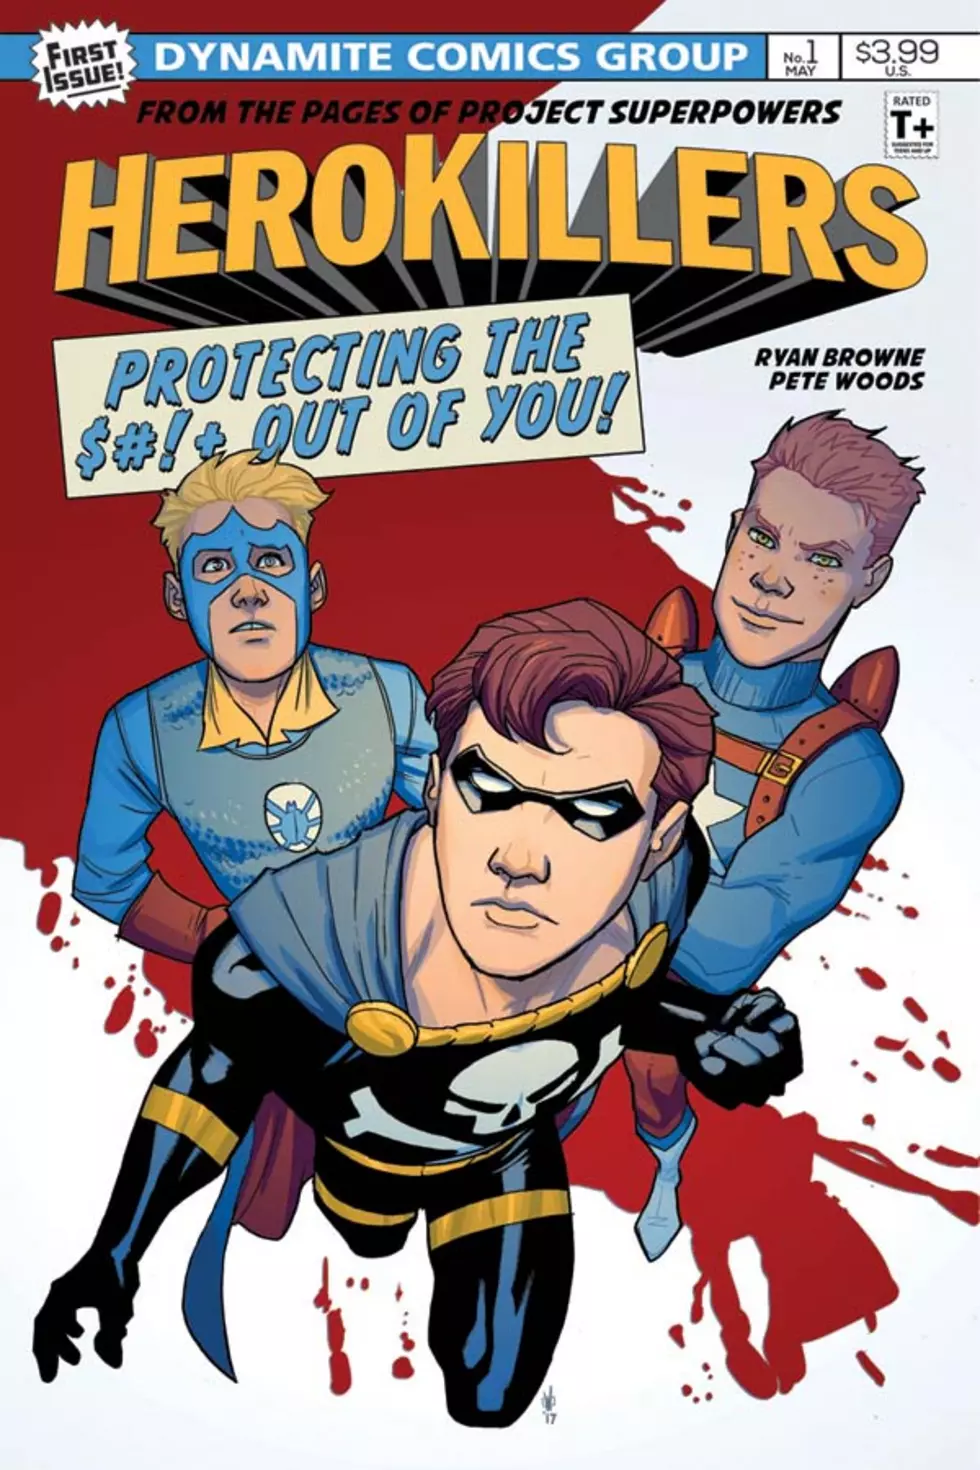 Ryan Browne And Pete Woods Send Up Superheroes In &#8216;Project Superpowers: Hero Killers&#8217;